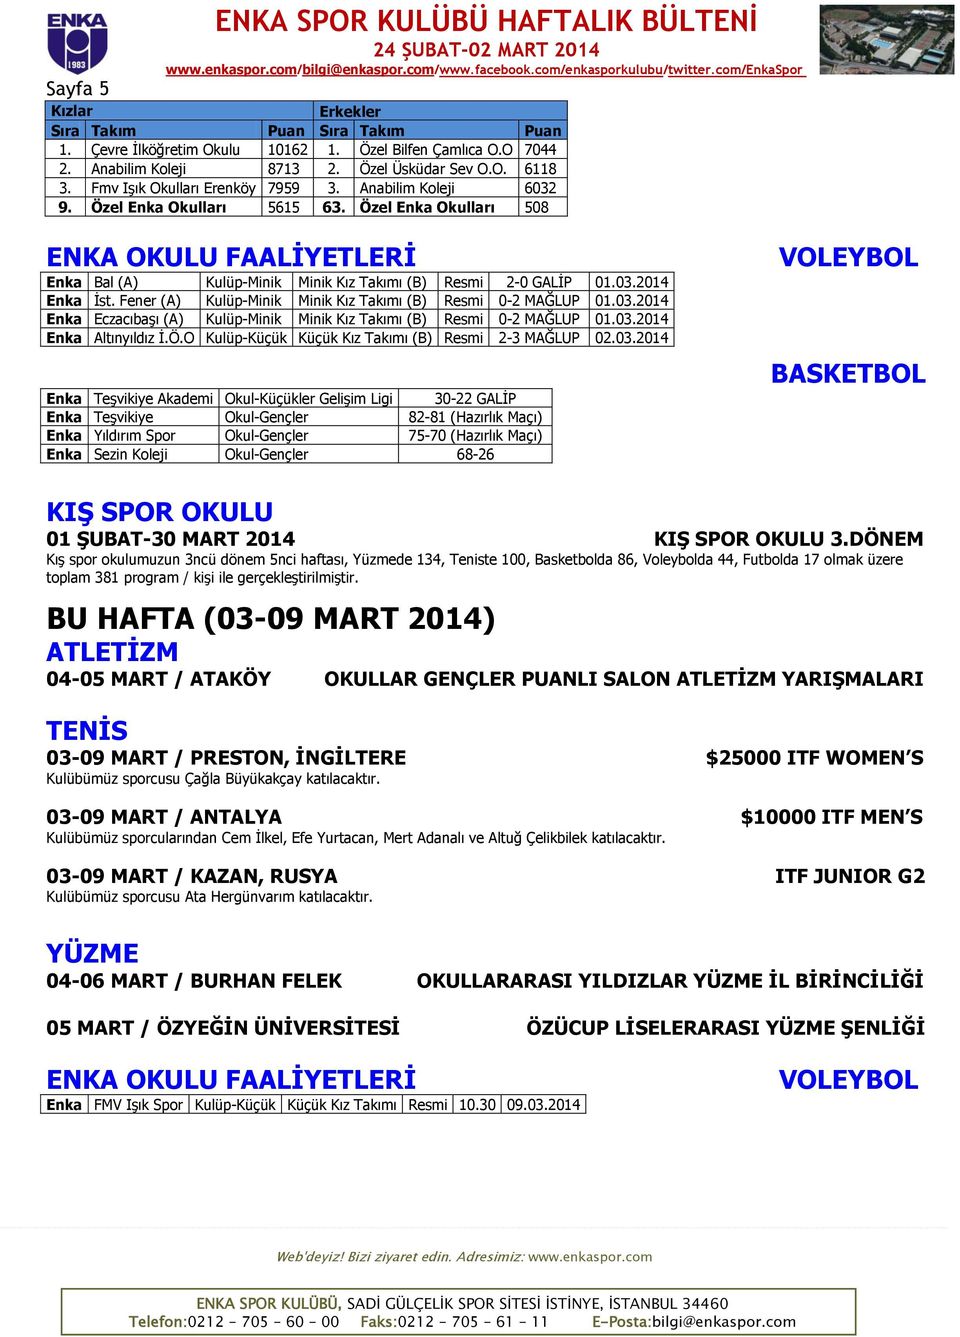 Özel Enka Okulları 508 ENKA OKULU FAALİYETLERİ Enka Bal (A) Kulüp-Minik Minik Kız Takımı (B) Resmi 2-0 GALİP 01.03.2014 Enka İst. Fener (A) Kulüp-Minik Minik Kız Takımı (B) Resmi 0-2 MAĞLUP 01.03.2014 Enka Eczacıbaşı (A) Kulüp-Minik Minik Kız Takımı (B) Resmi 0-2 MAĞLUP 01.